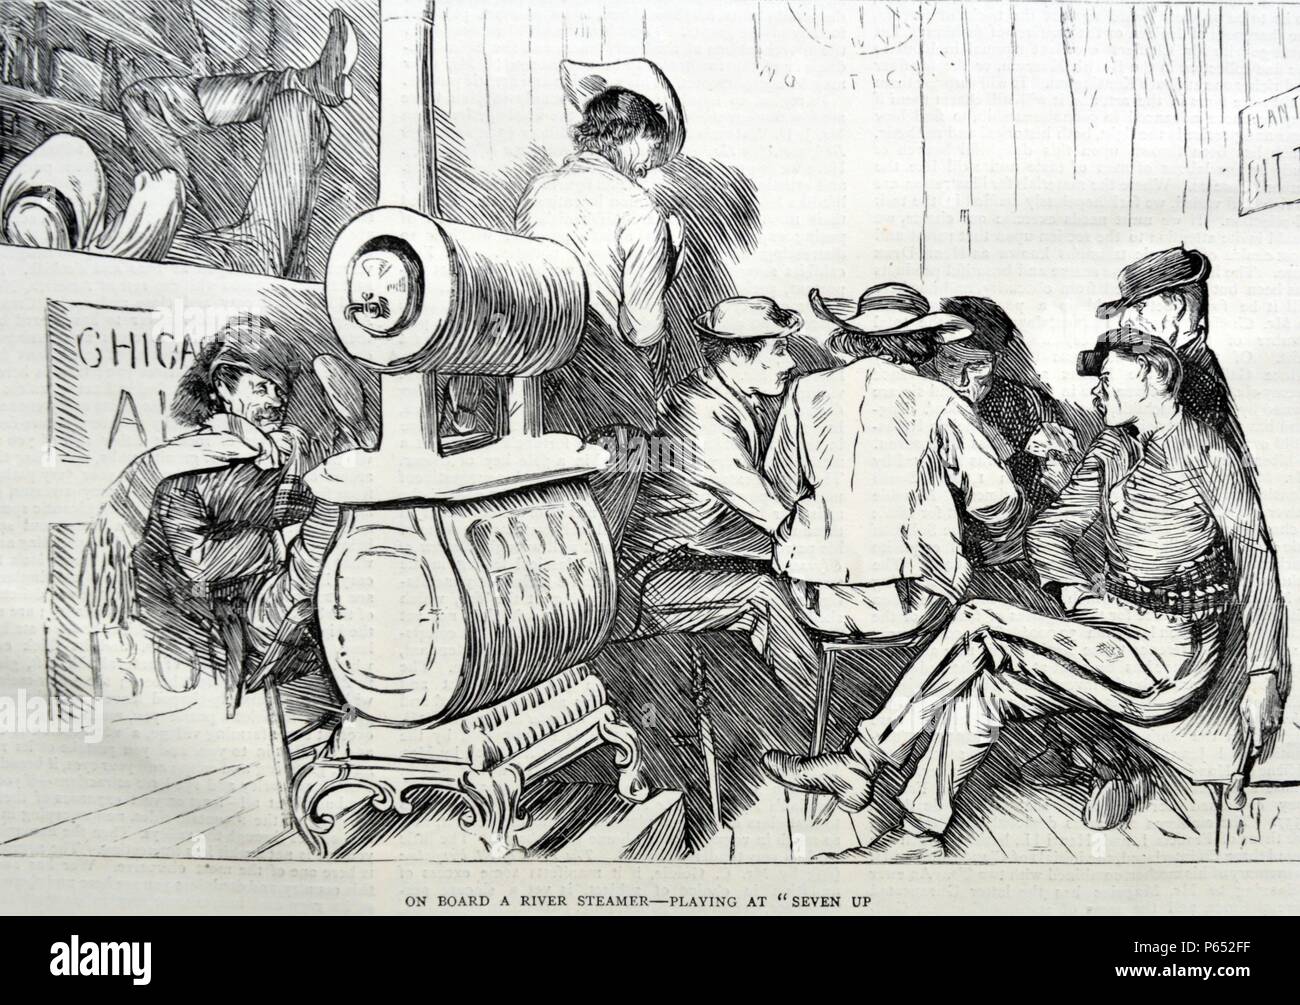 La gravure représente une scène à bord d'un bateau à vapeur de la rivière. Un groupe d'hommes jouent le jeu de cartes "sept". Datée 1870 Banque D'Images